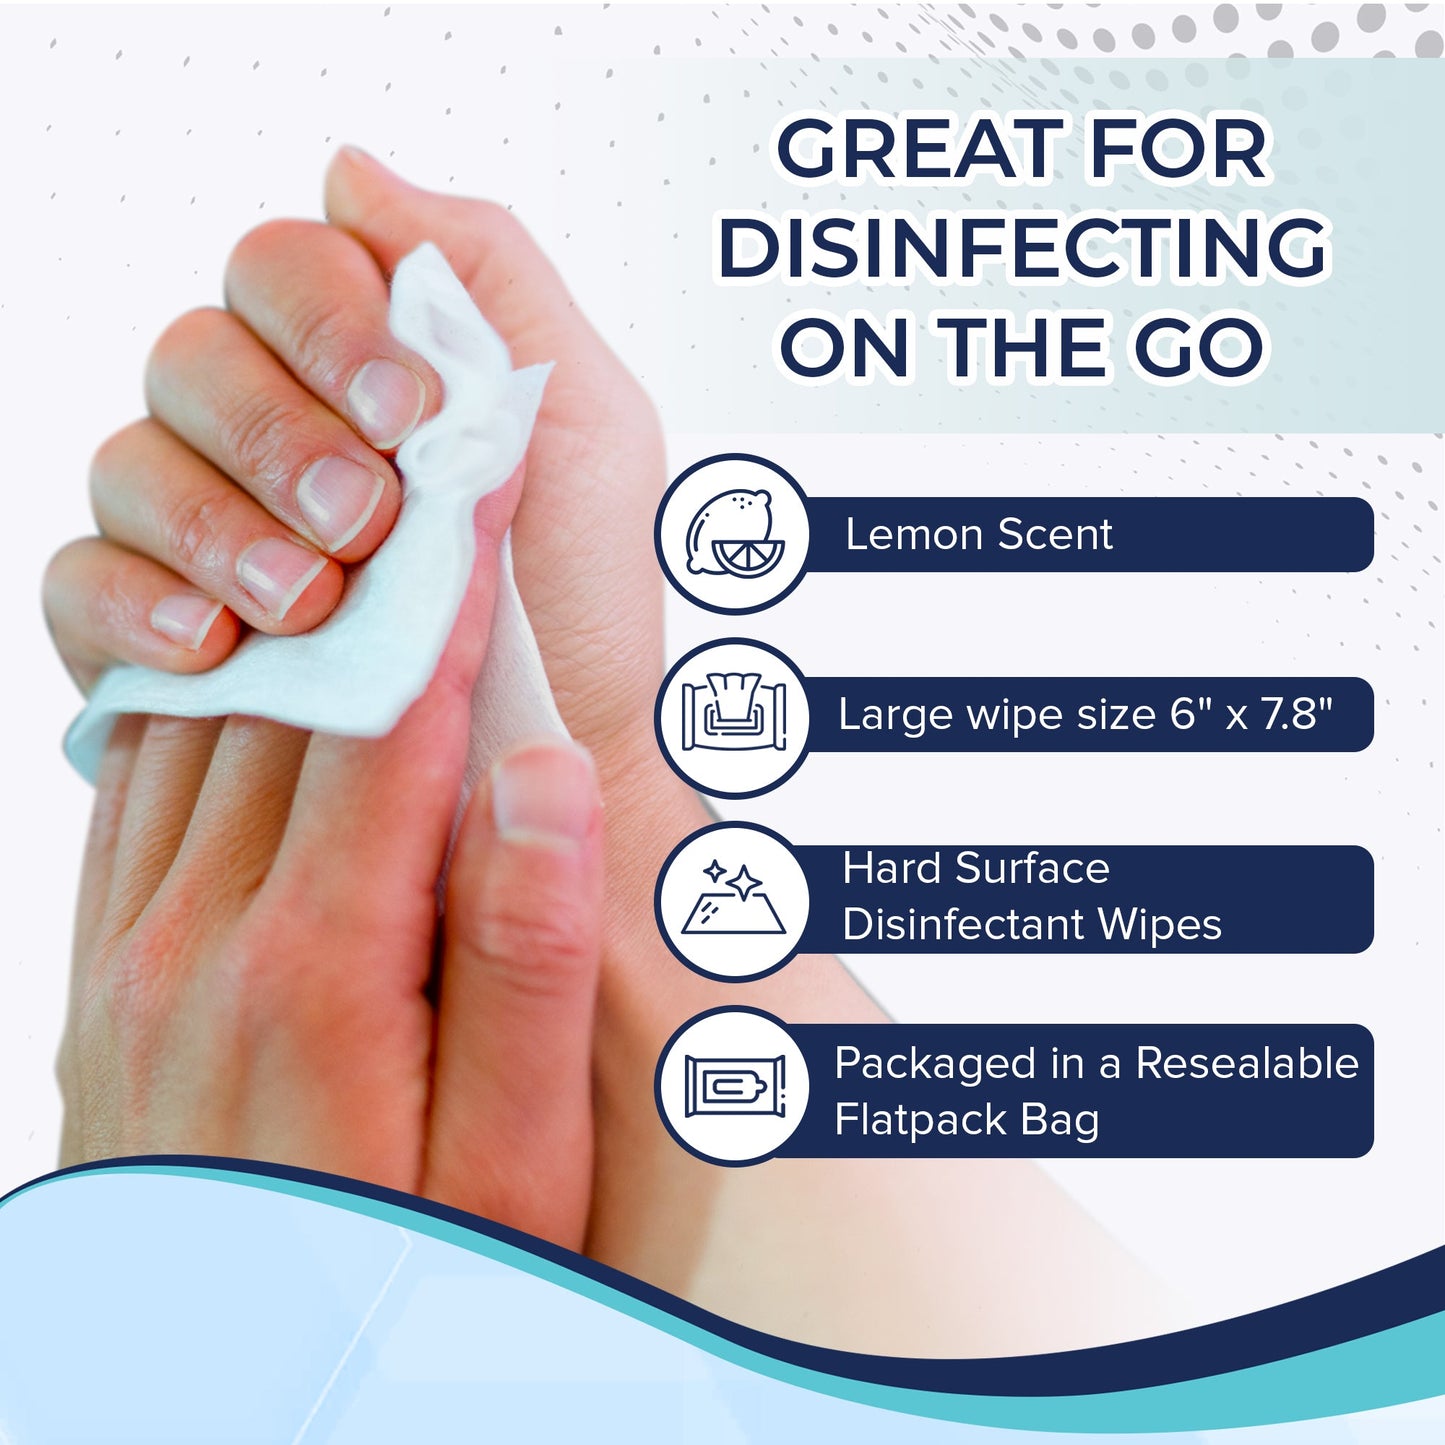 Disinfecting Wipes EPA List N | 2 Packs of 80